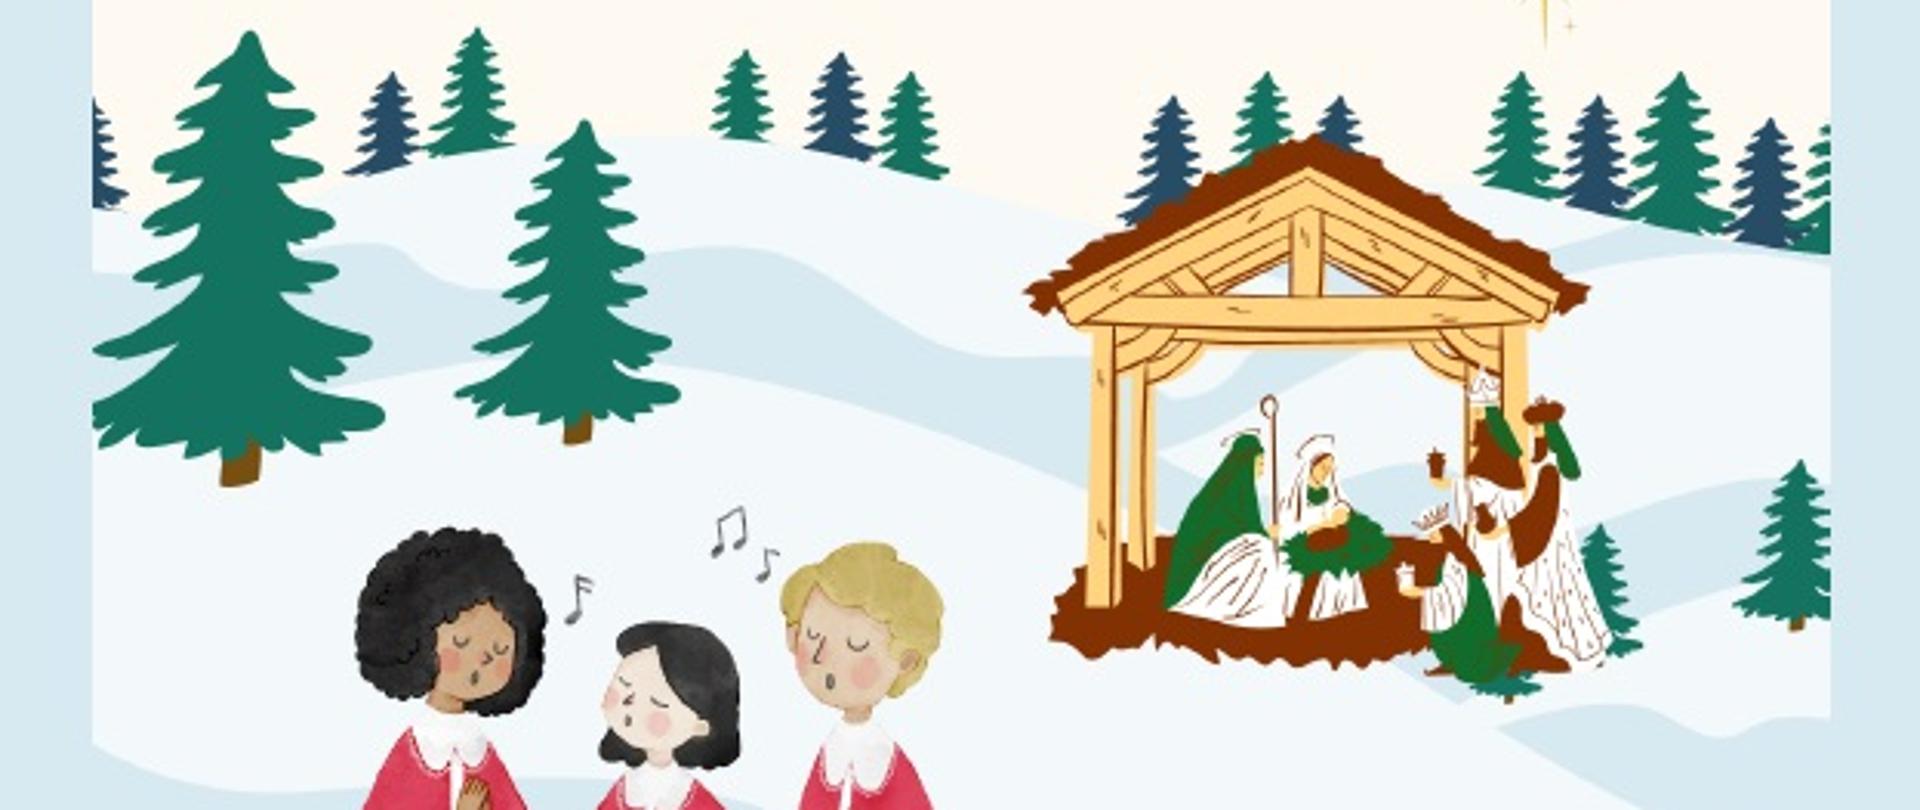 Plakat koncertu z ilustracjami świątecznymi, śniegiem, choinkami oraz śpiewającym chórem i szopką